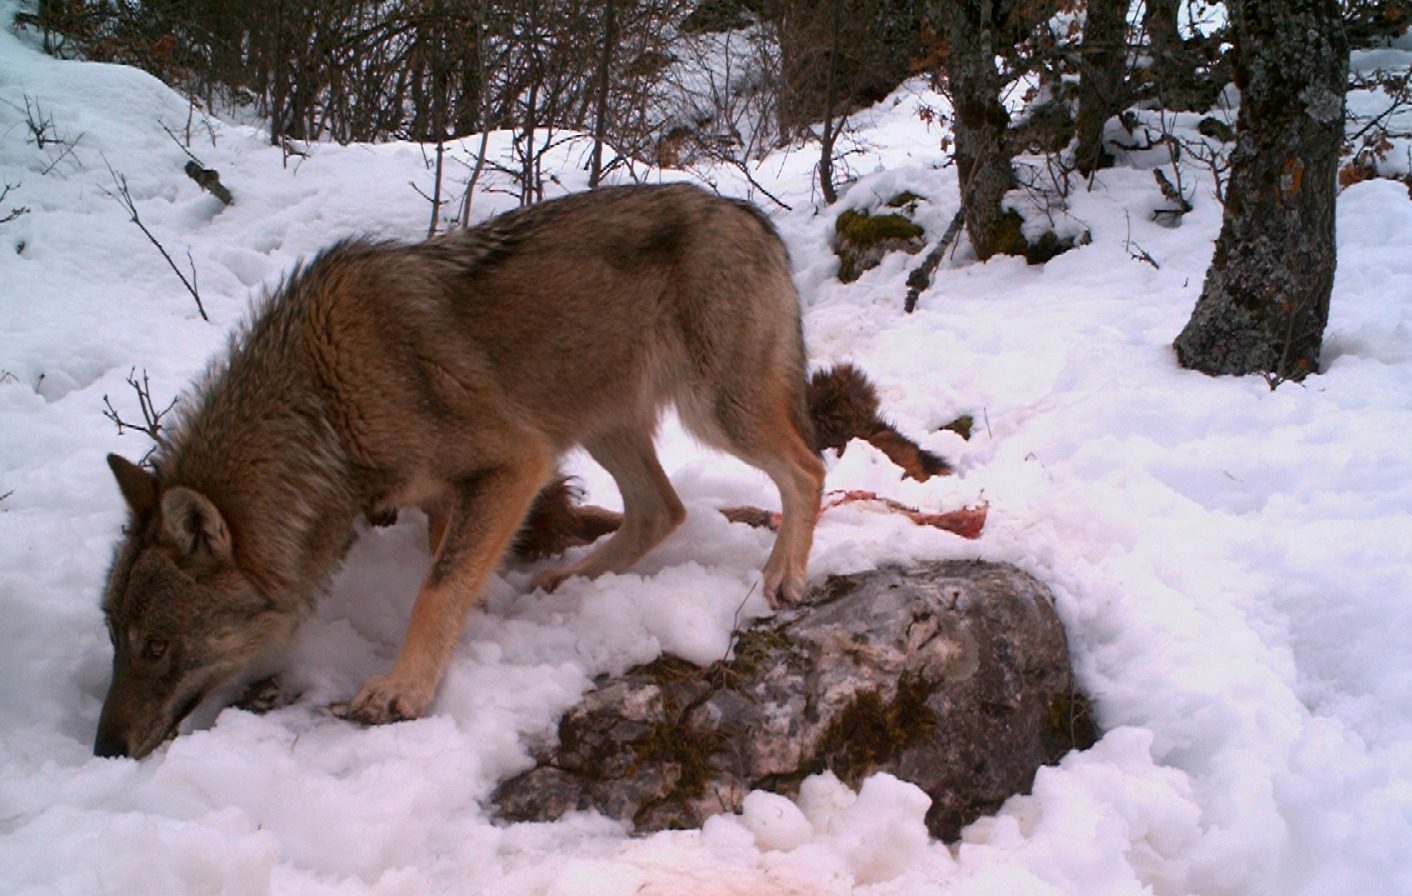 Miti, leggende ed ultime ricerche scientifiche sul lupo. Un’icona della fauna cilentana